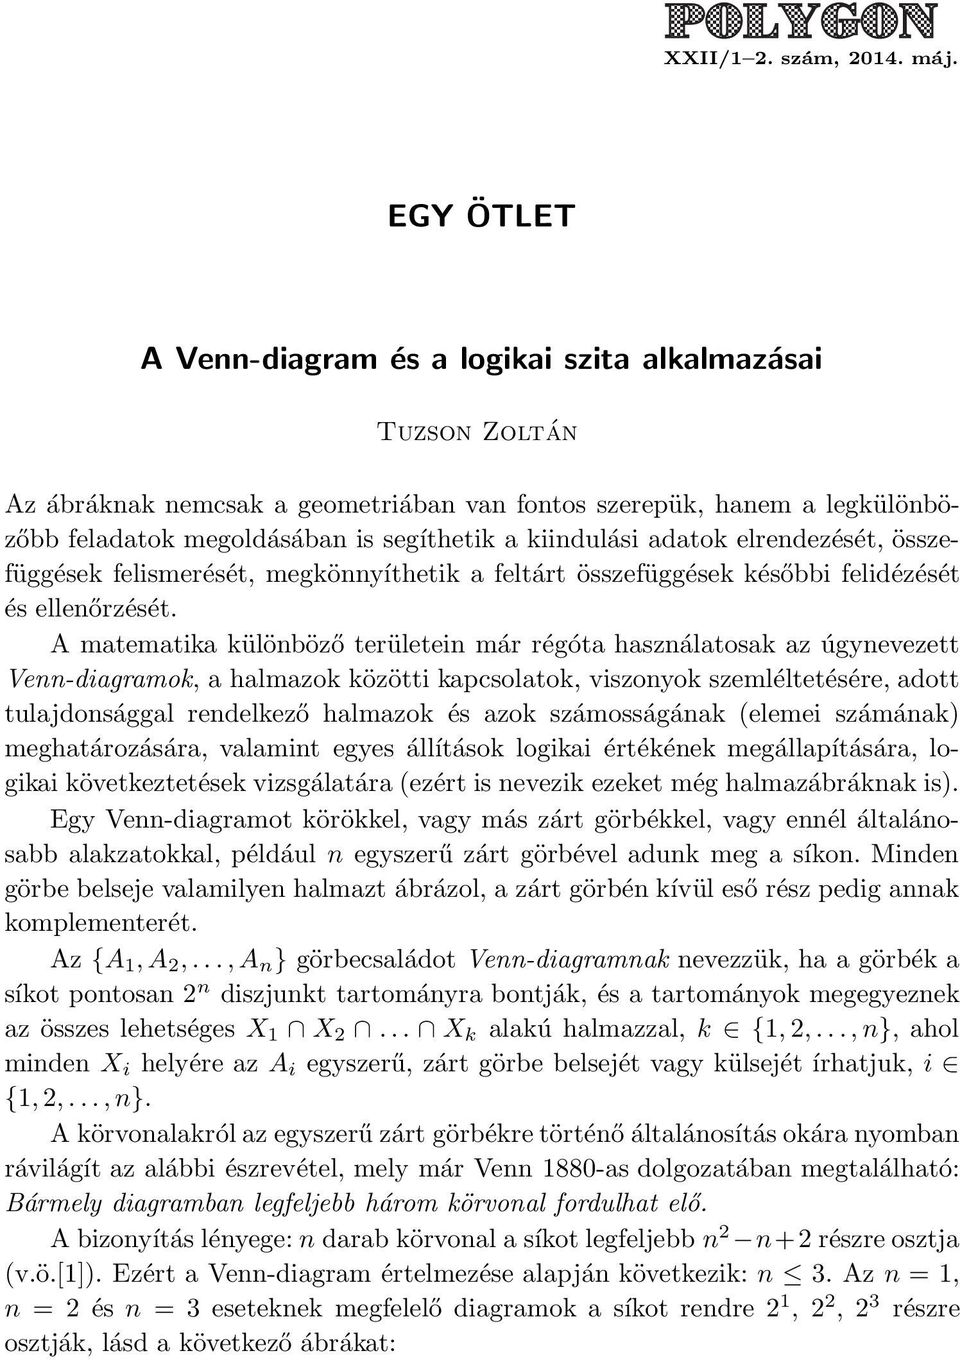 EGY ÖTLET. A Venn-diagram és a logikai szita alkalmazásai - PDF Ingyenes  letöltés